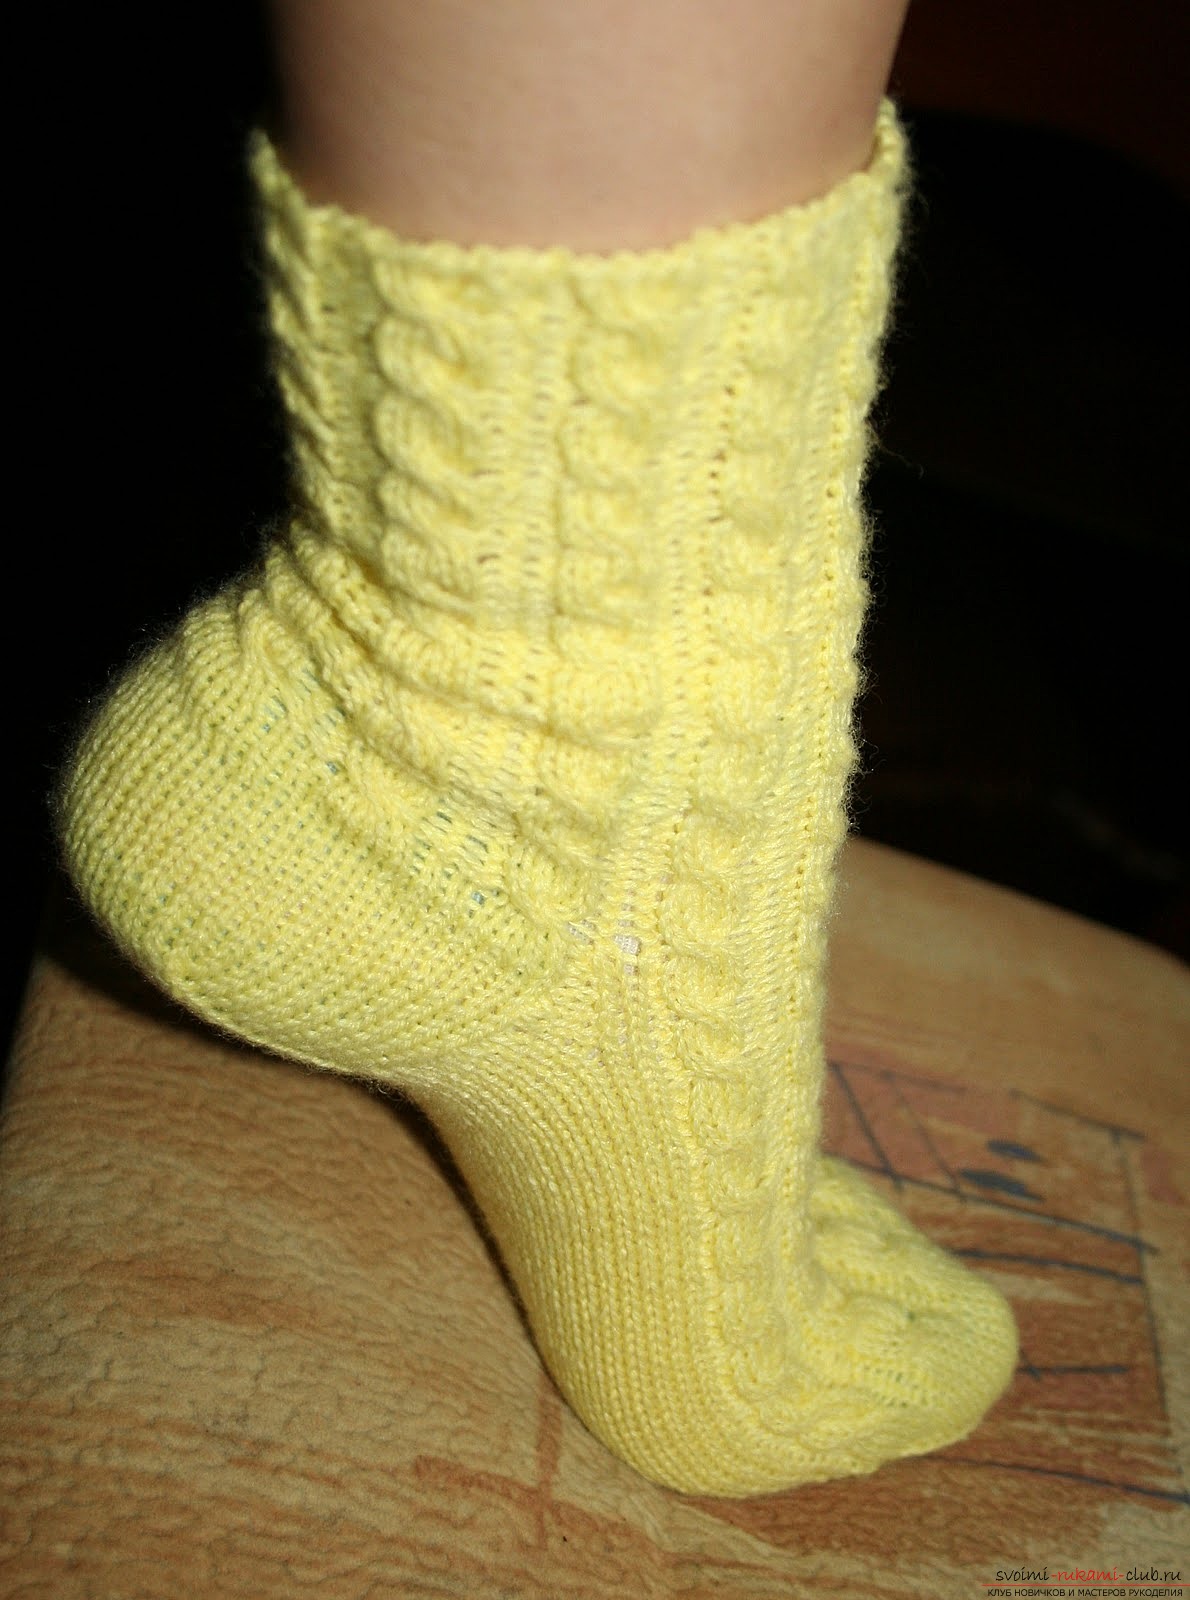 opengewerkte sokken met breinaalden. Foto №4